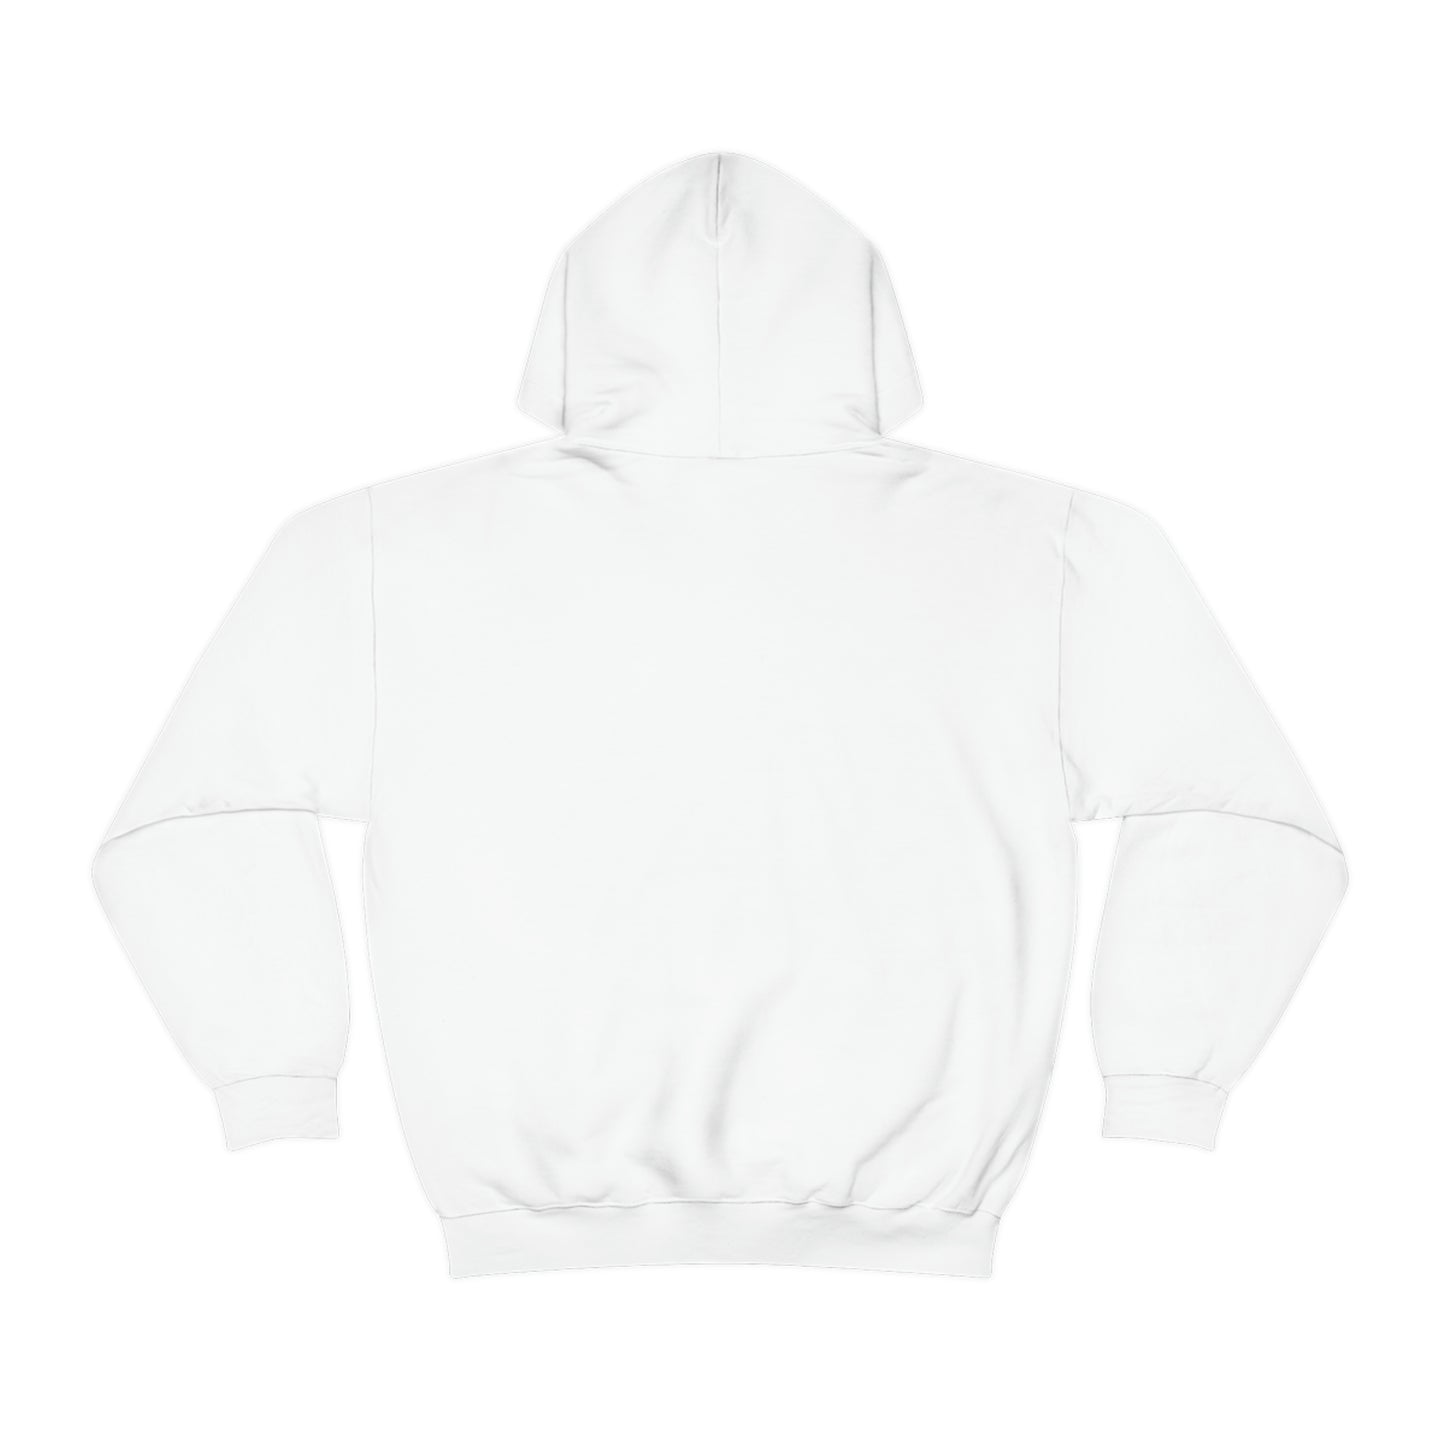 Musk ox Unisex Heavy Blend™ Hooded Sweatshirt